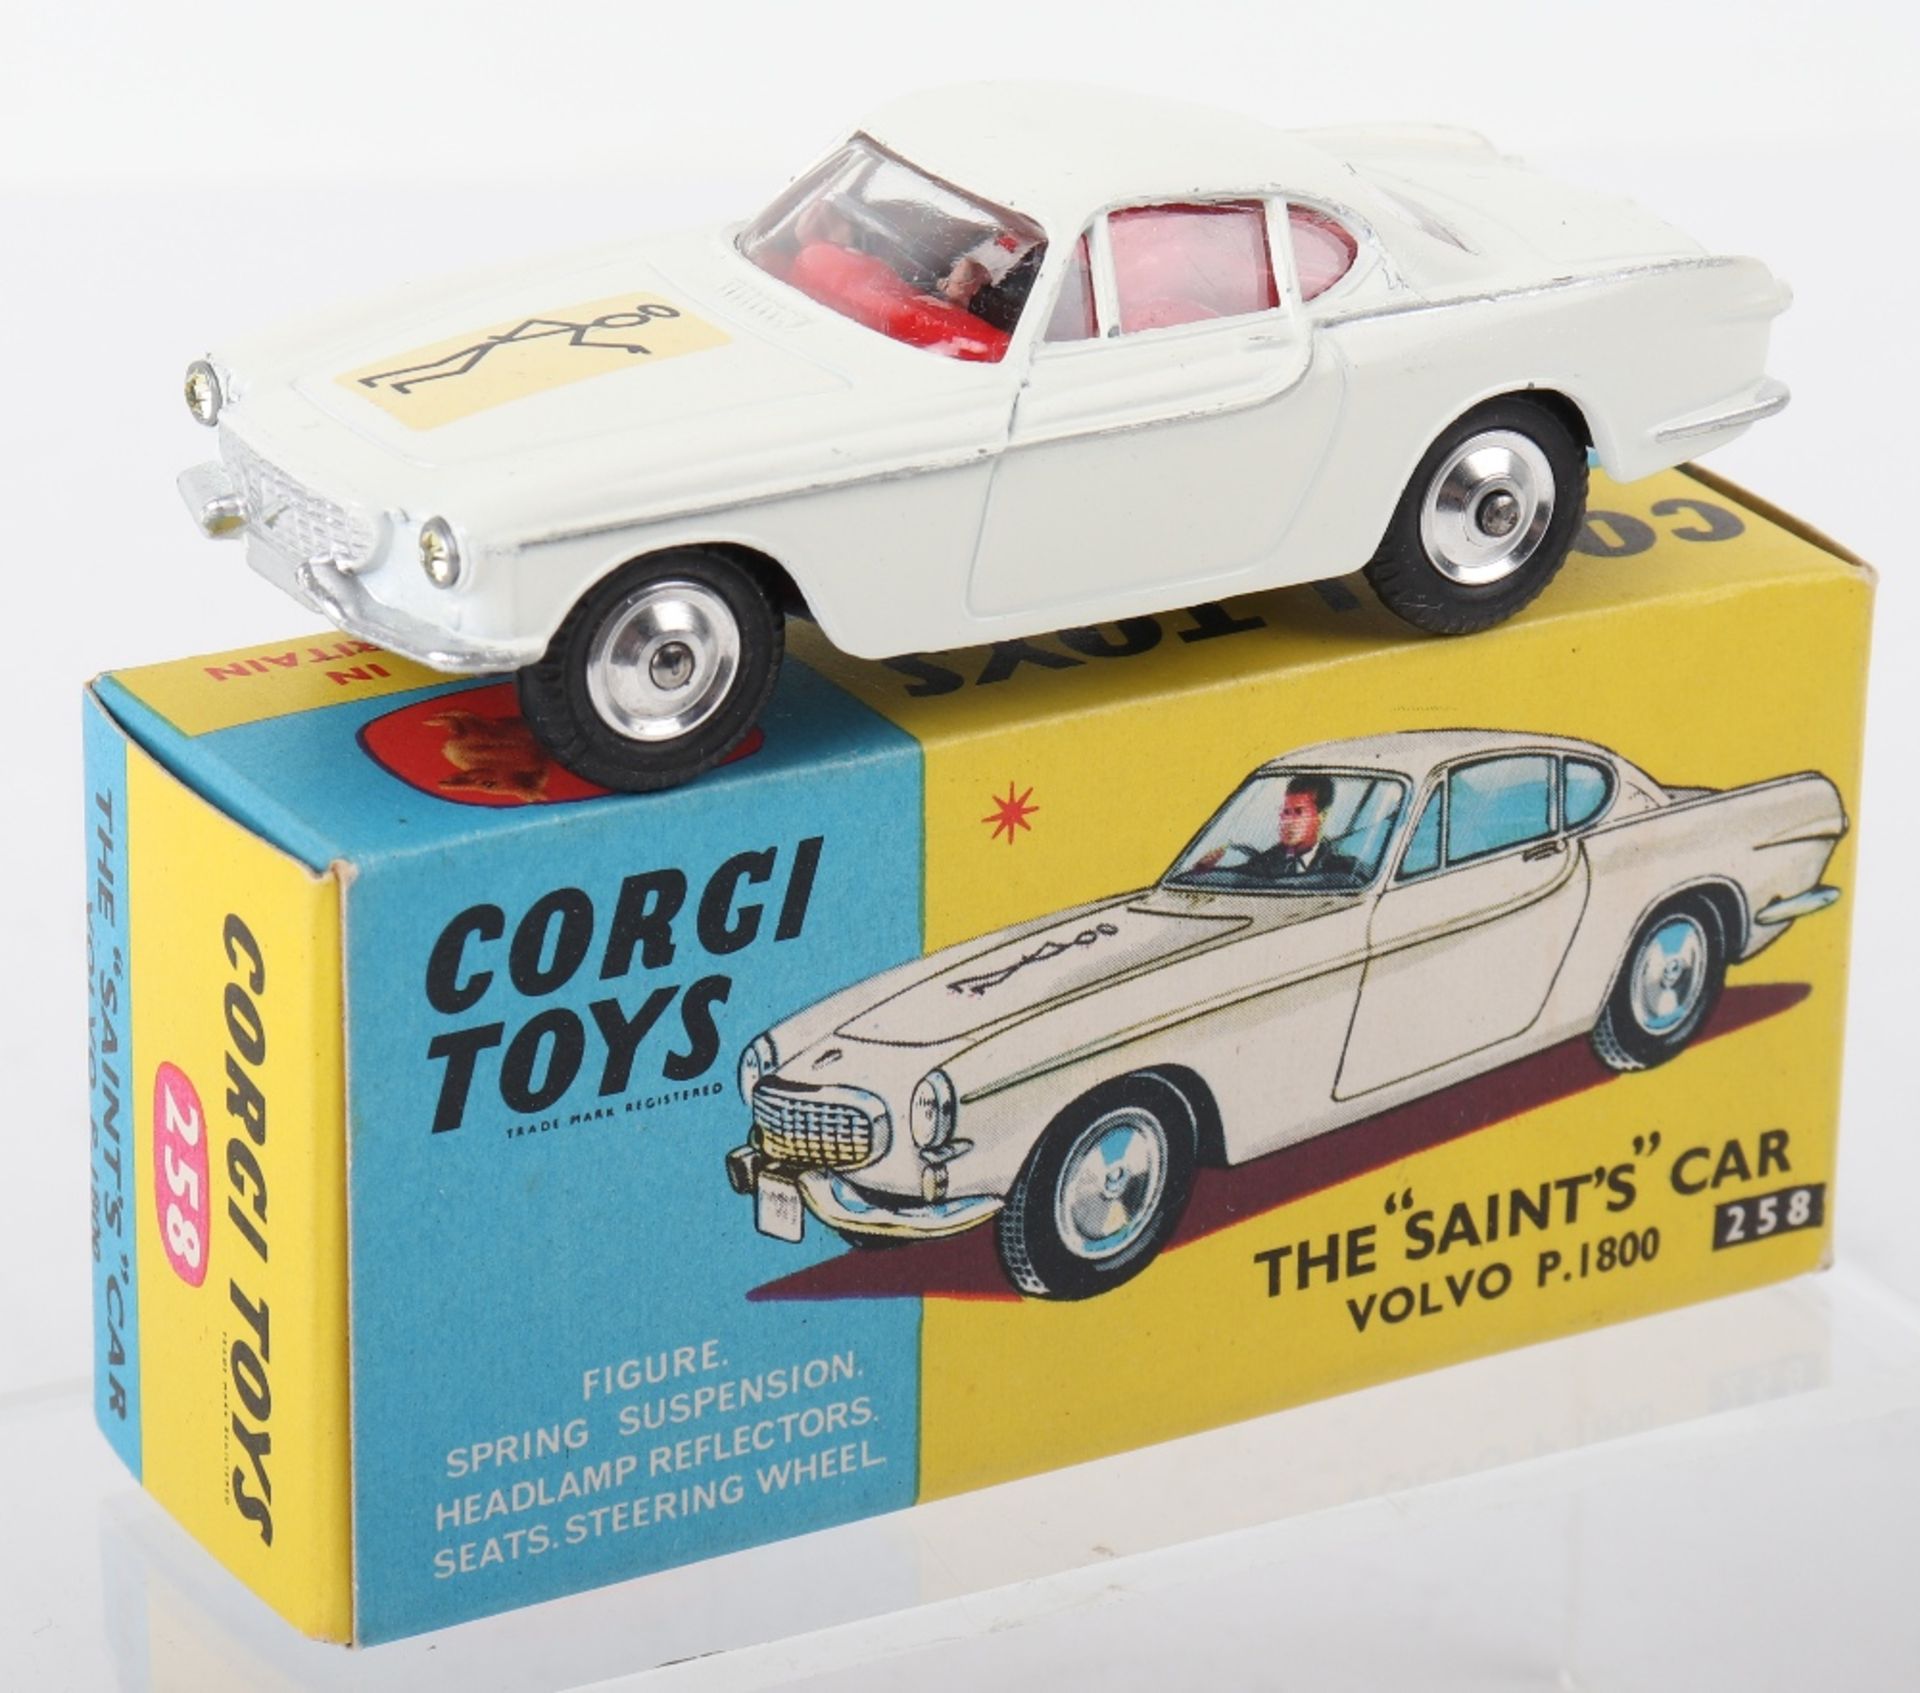 Corgi Toys 258 The “Saints” Car Volvo P.1800